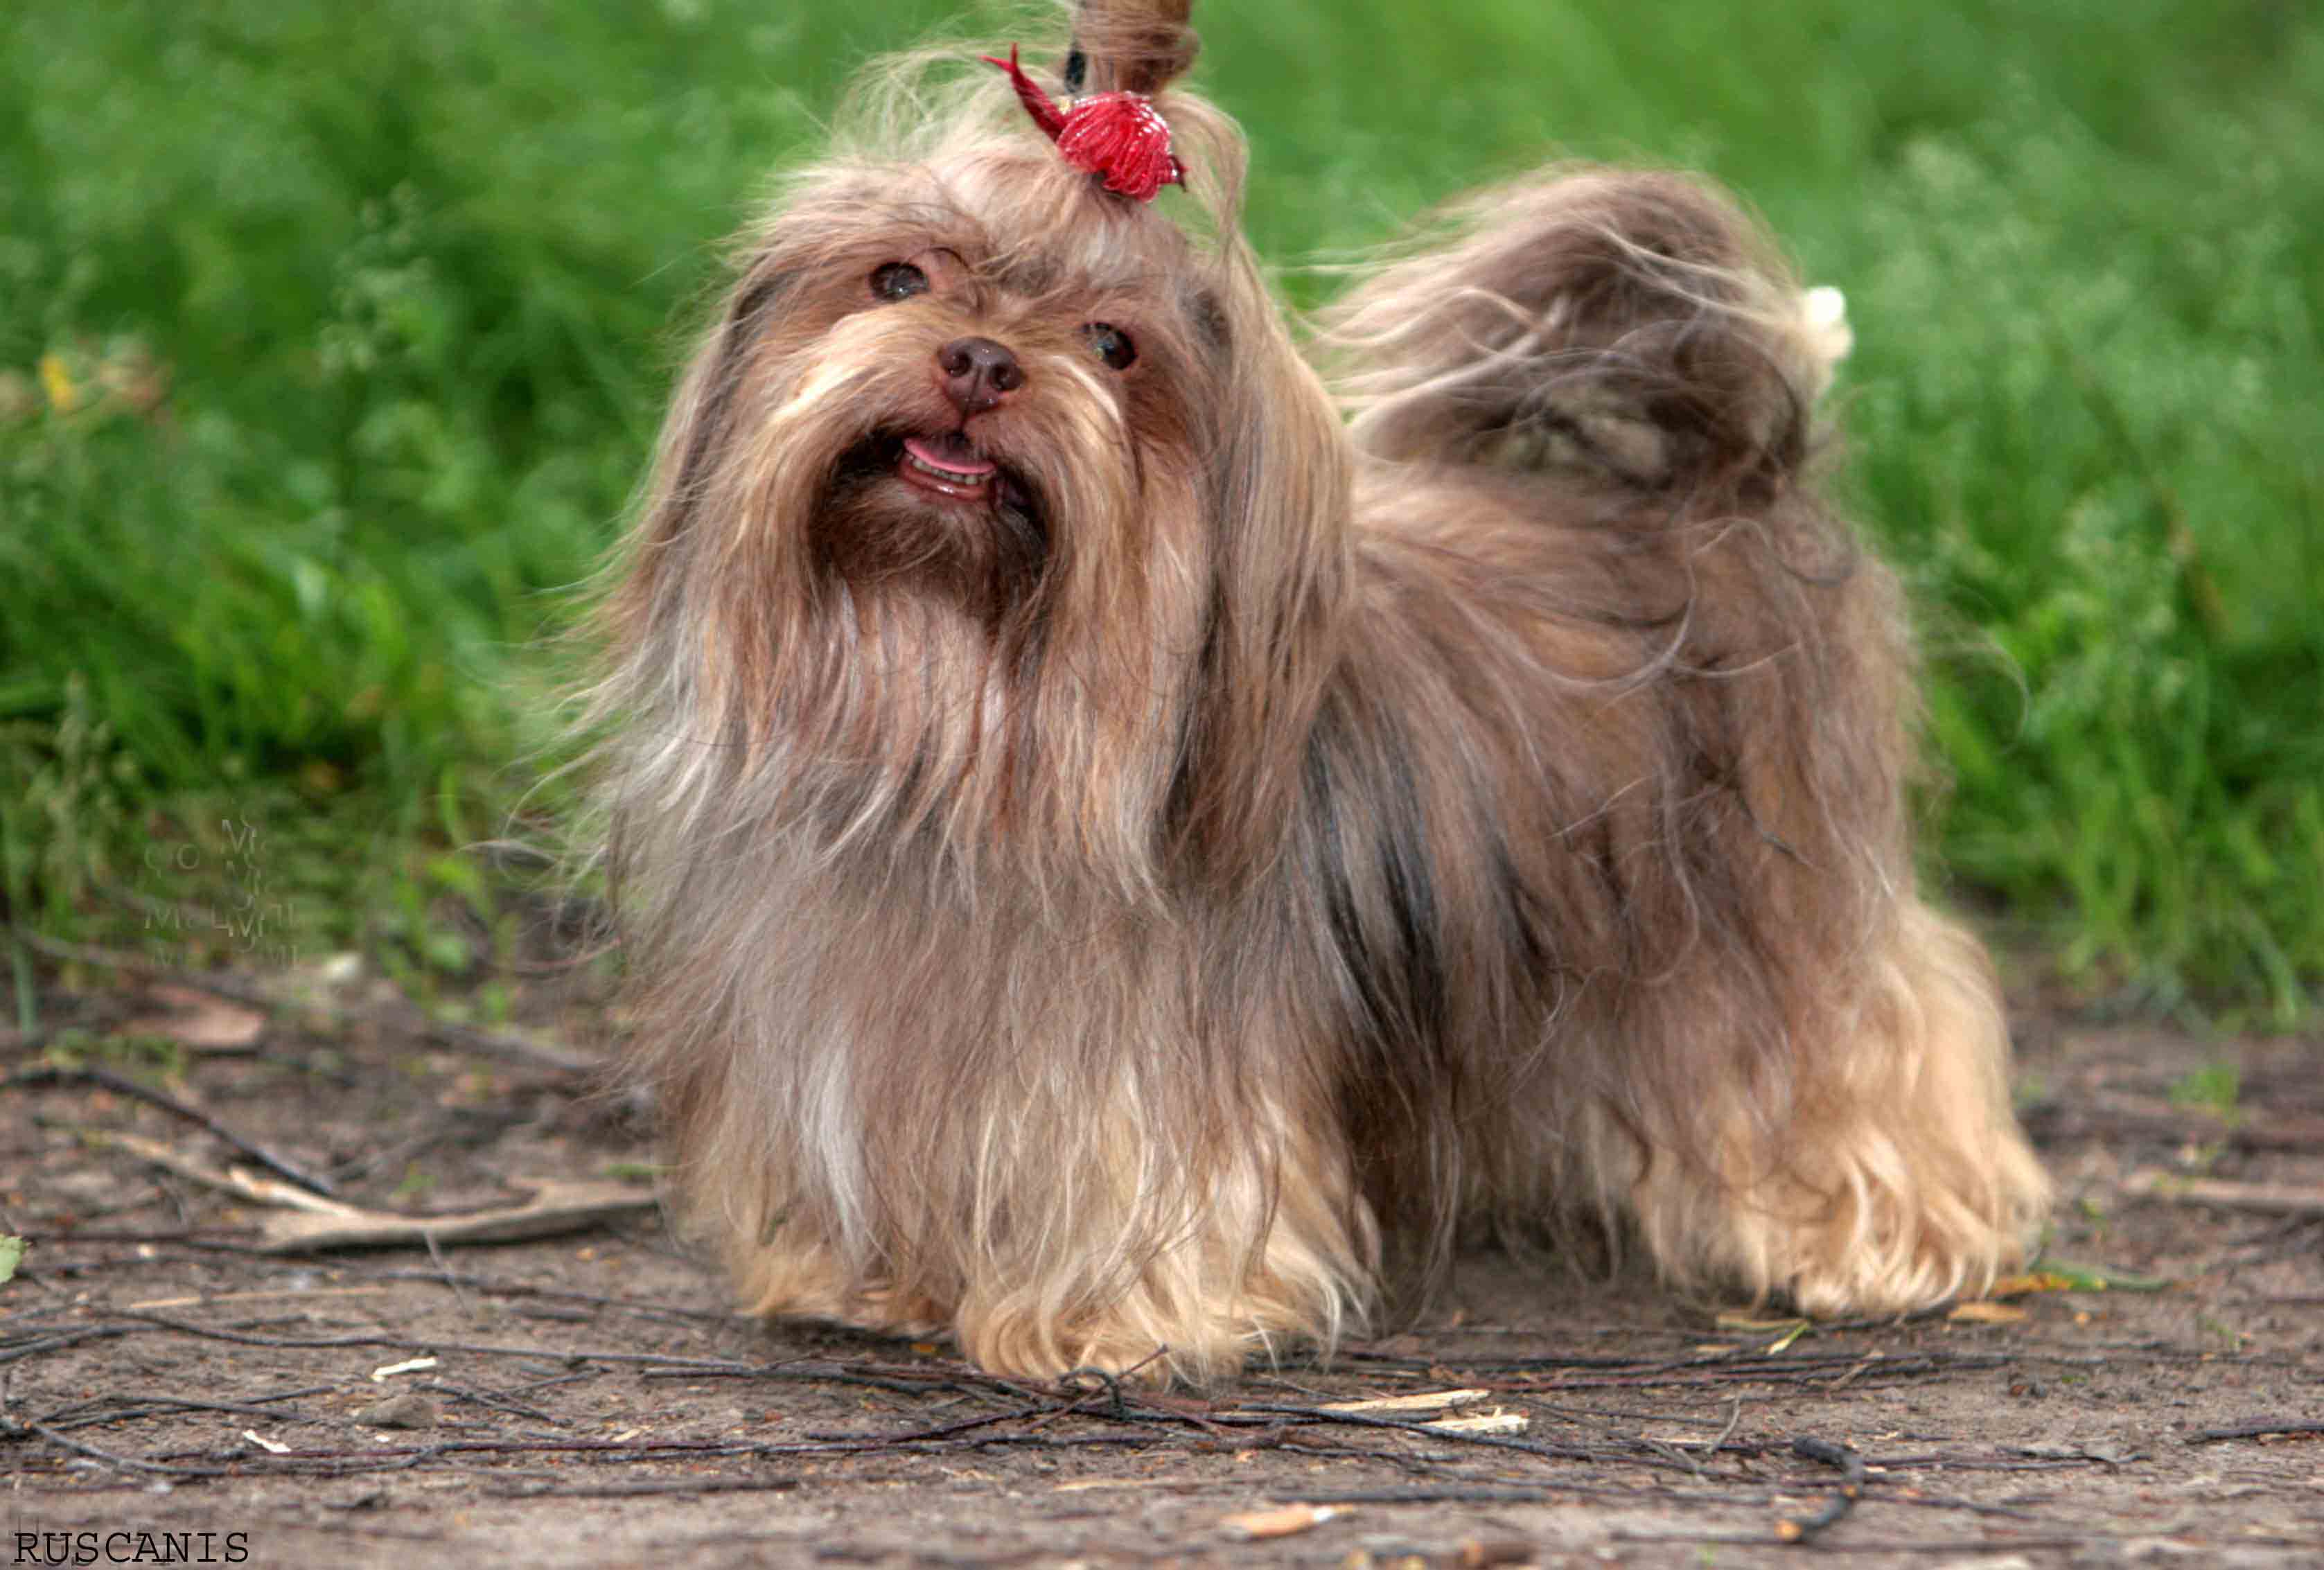 Русские цветные болонки: описание, характер, фото породы | все о собаках